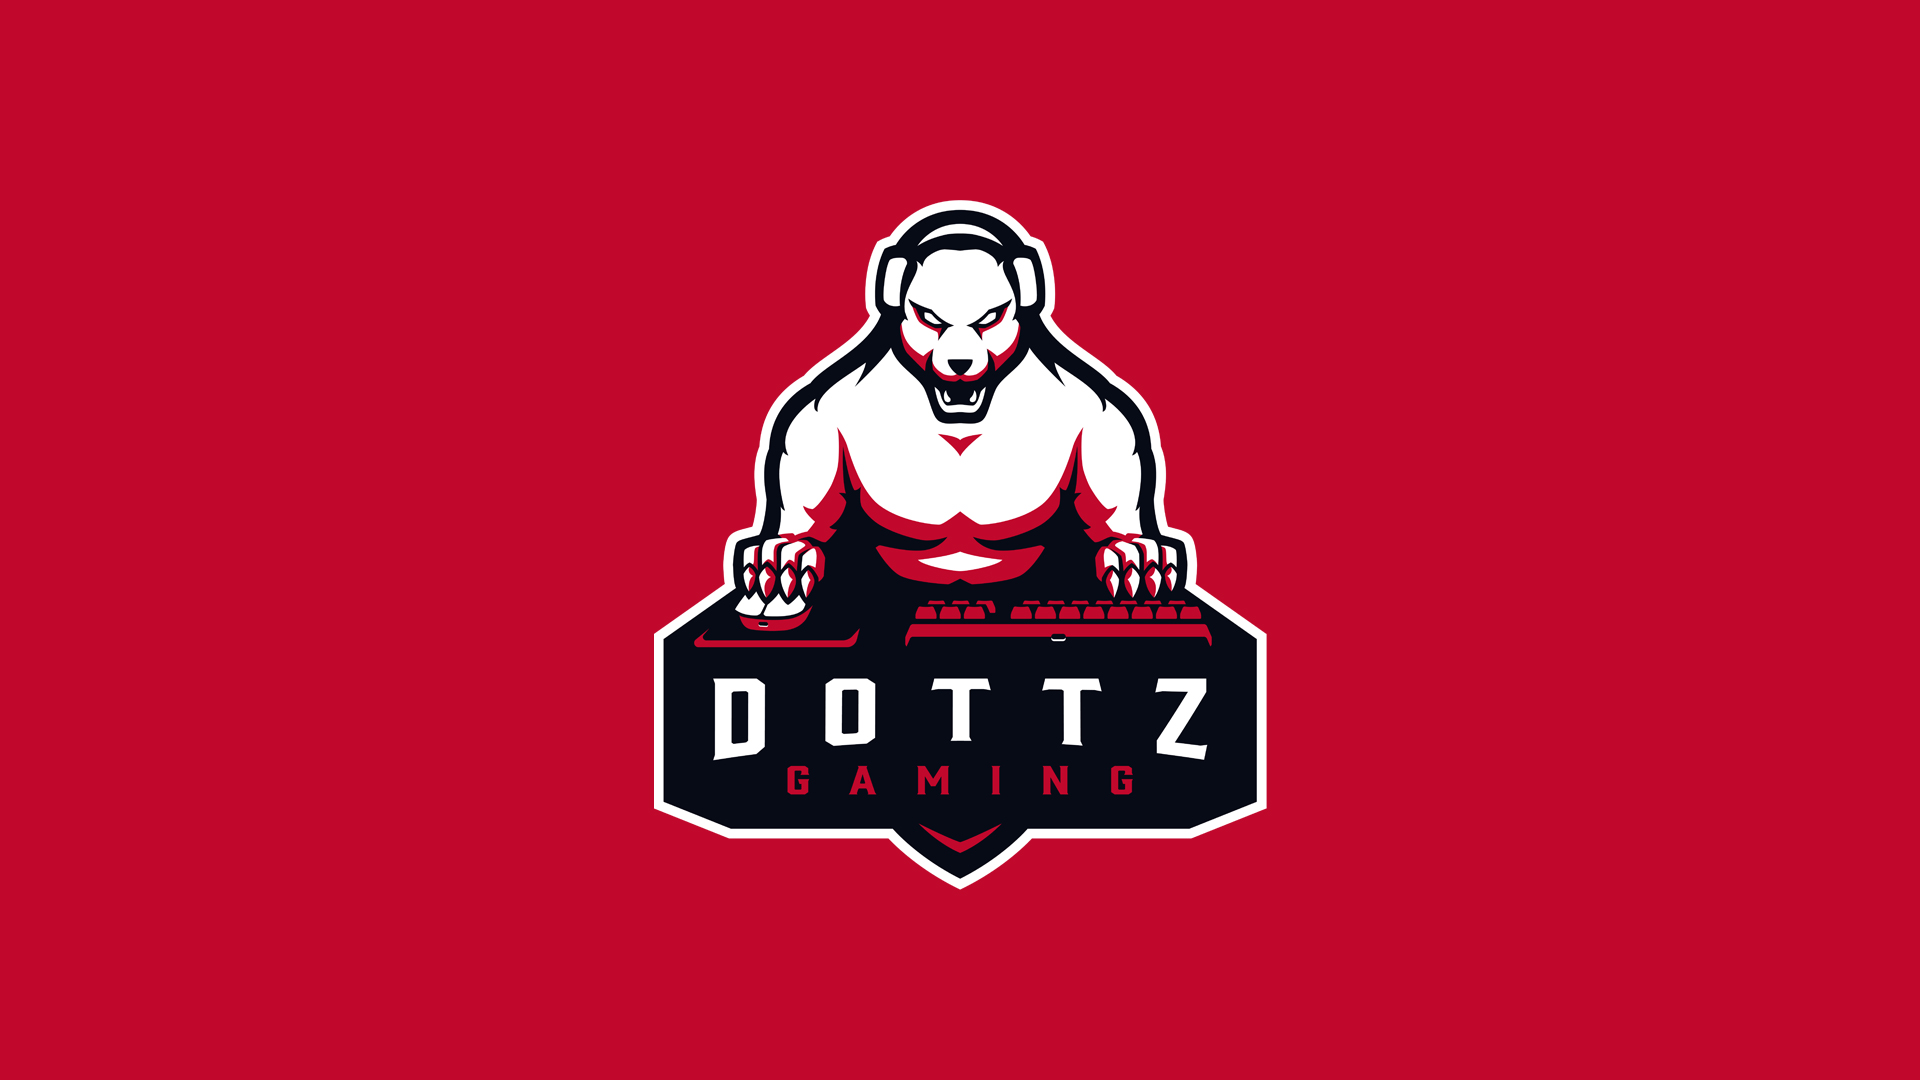 Dottz -Gaming-logo